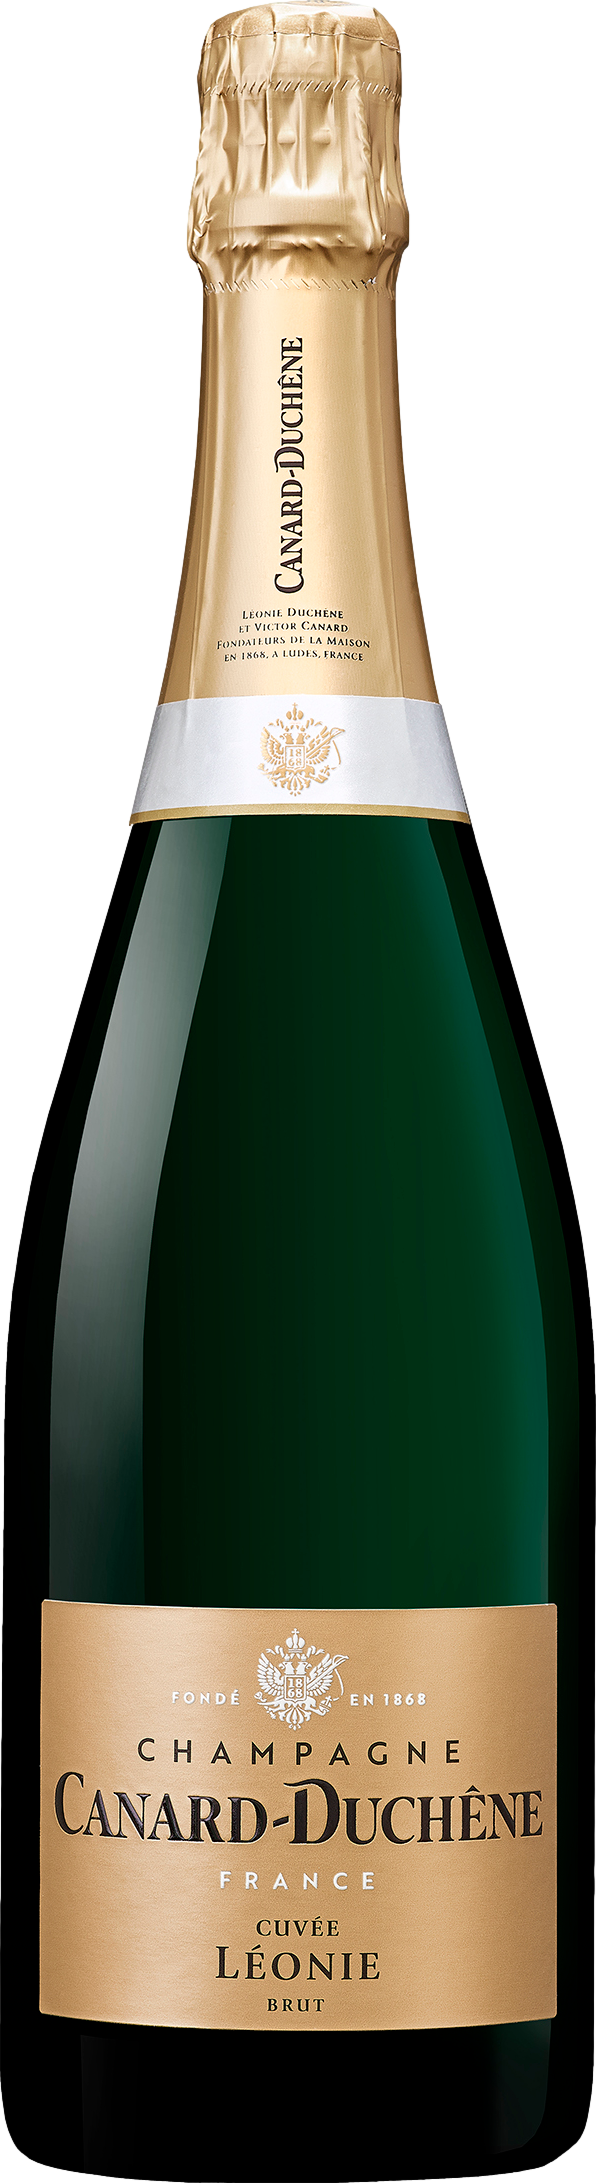 Champagne Canard-Duchene Cuvee Leonie Brut Šumivé 12.0% 0.75 l